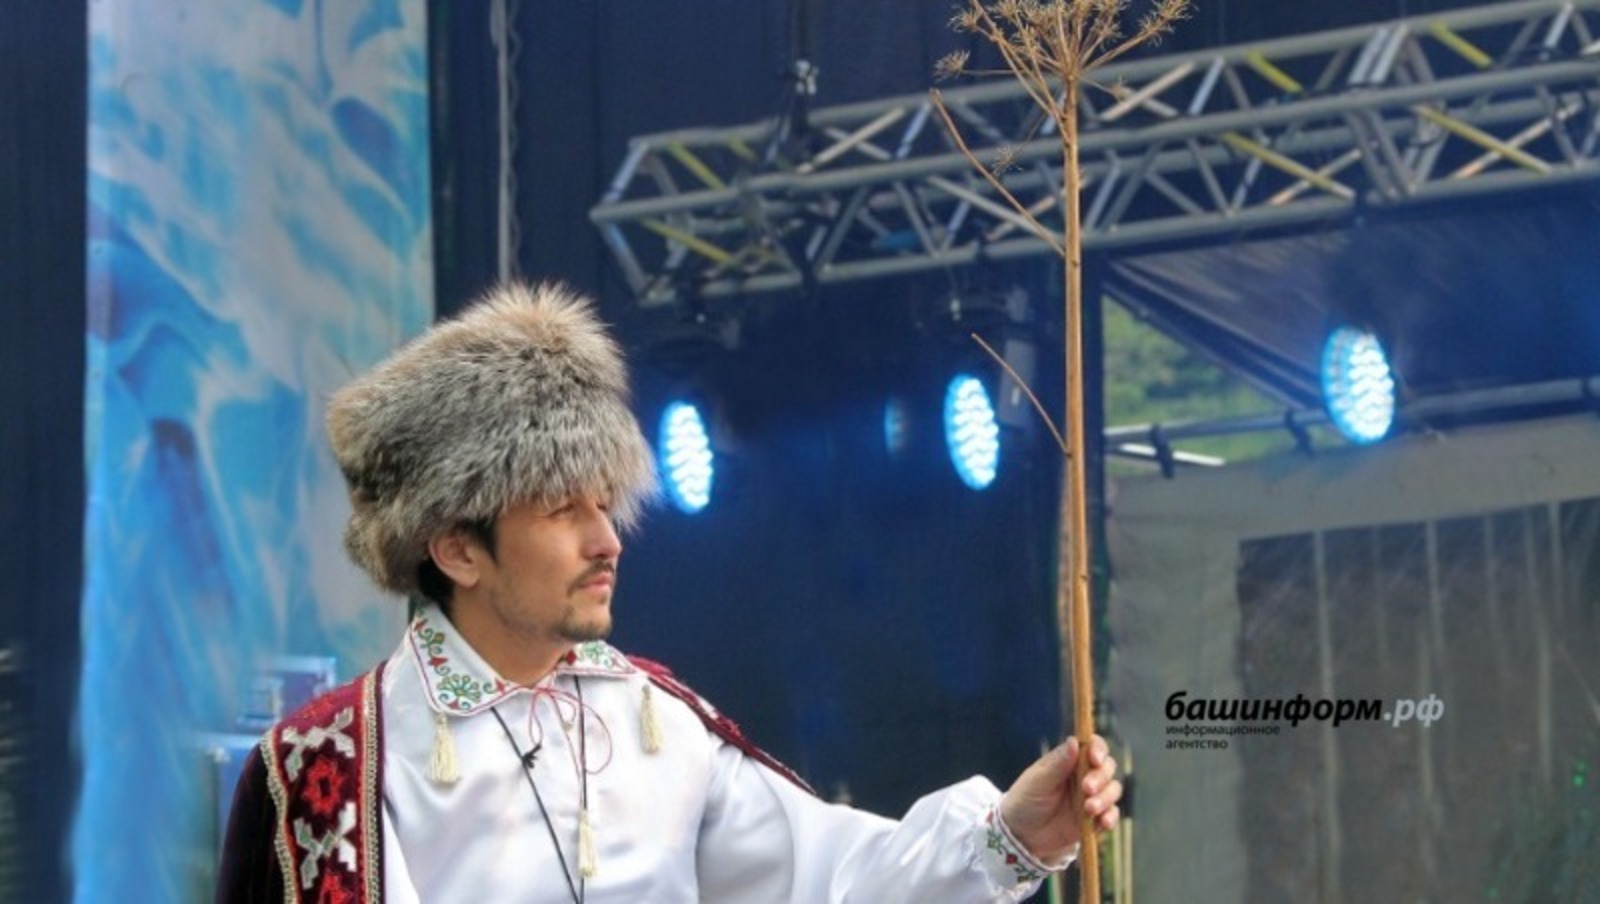 Башкирская народная музыка представлена на всех цифровых площадках мира